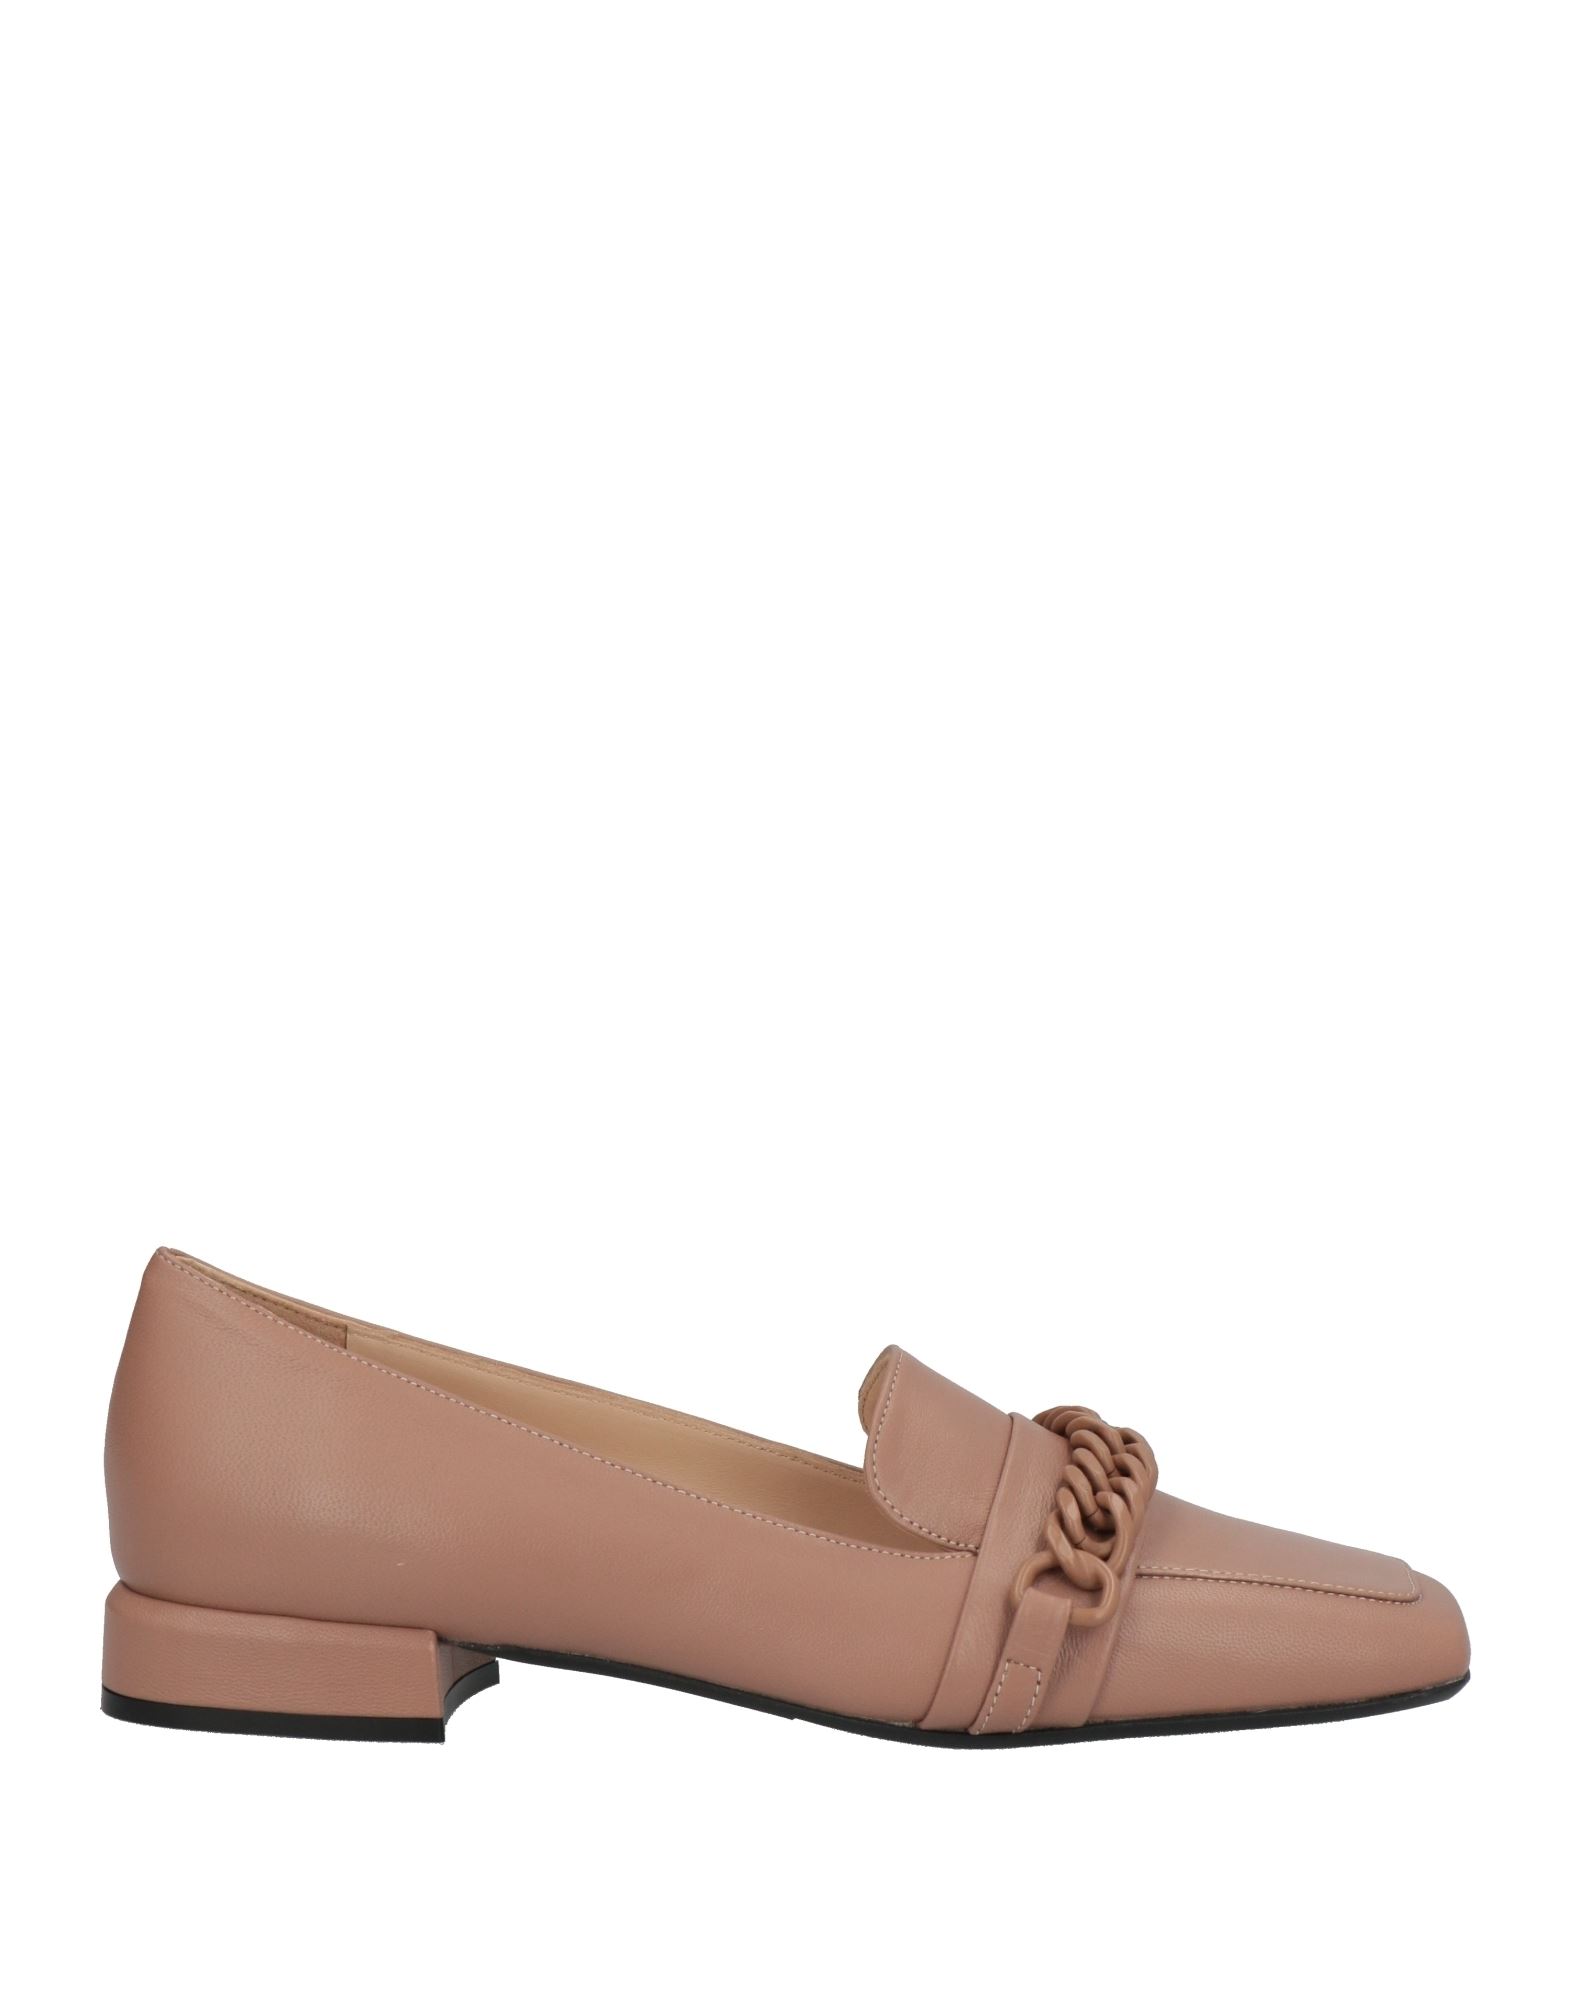 Shop Baldinini Woman Loafers Pastel Pink Size 8 Lambskin